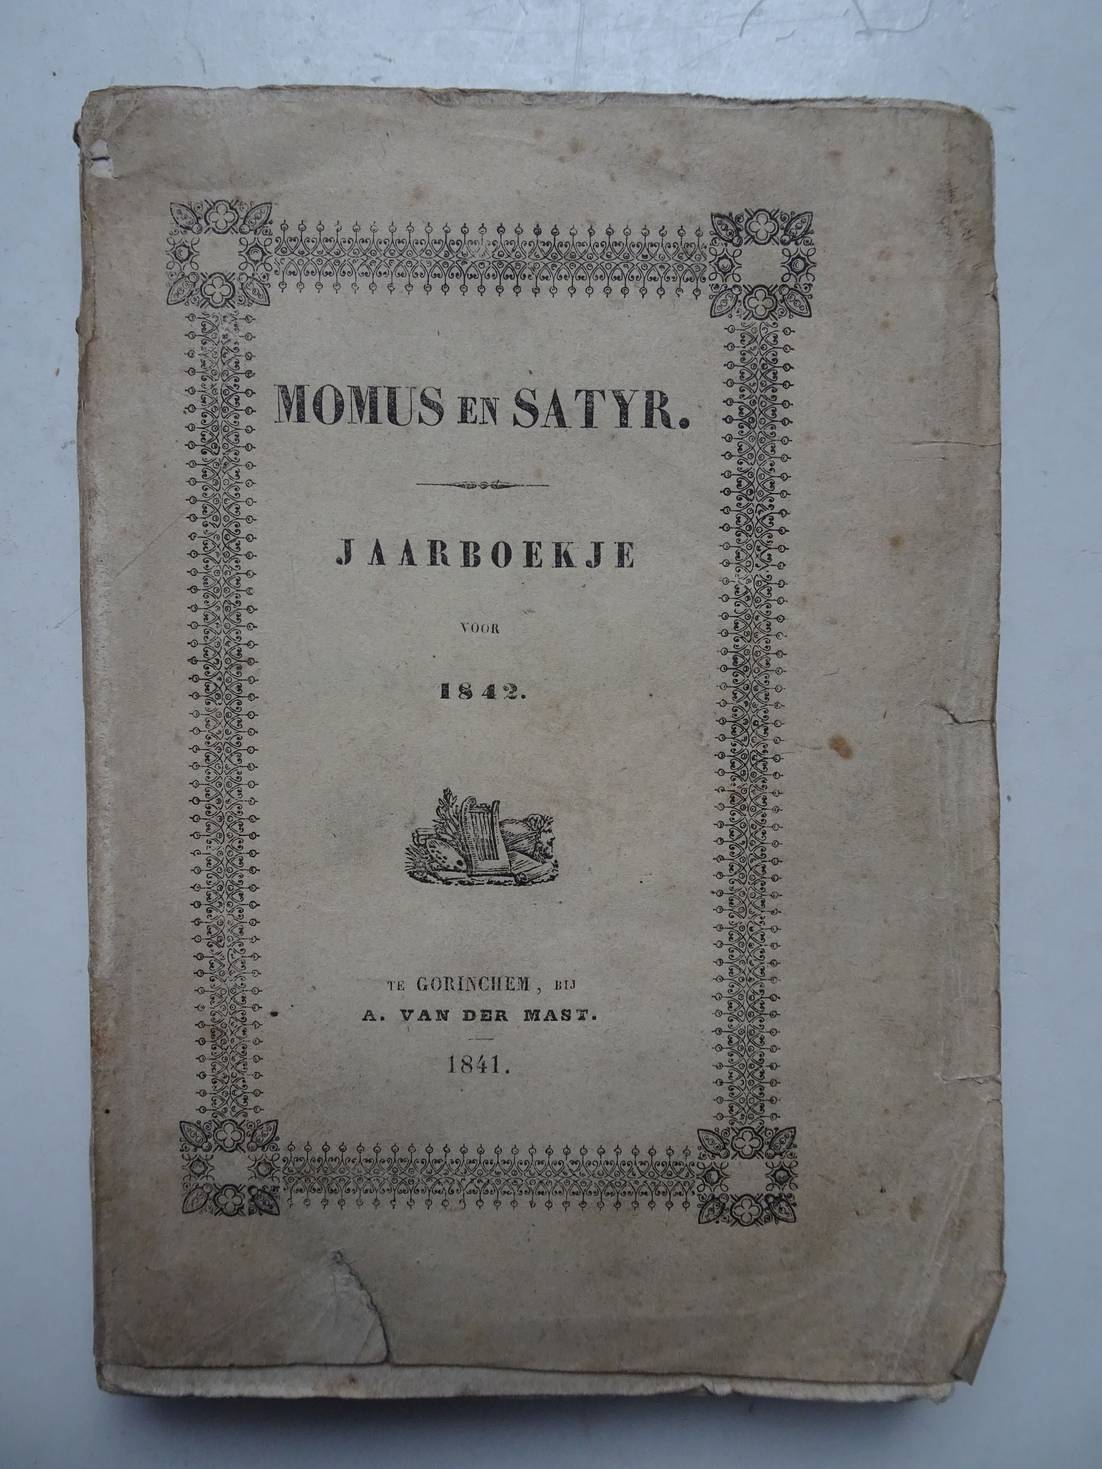 -. - Momus en Satyr. Jaarboekje voor 1842. Met platen.